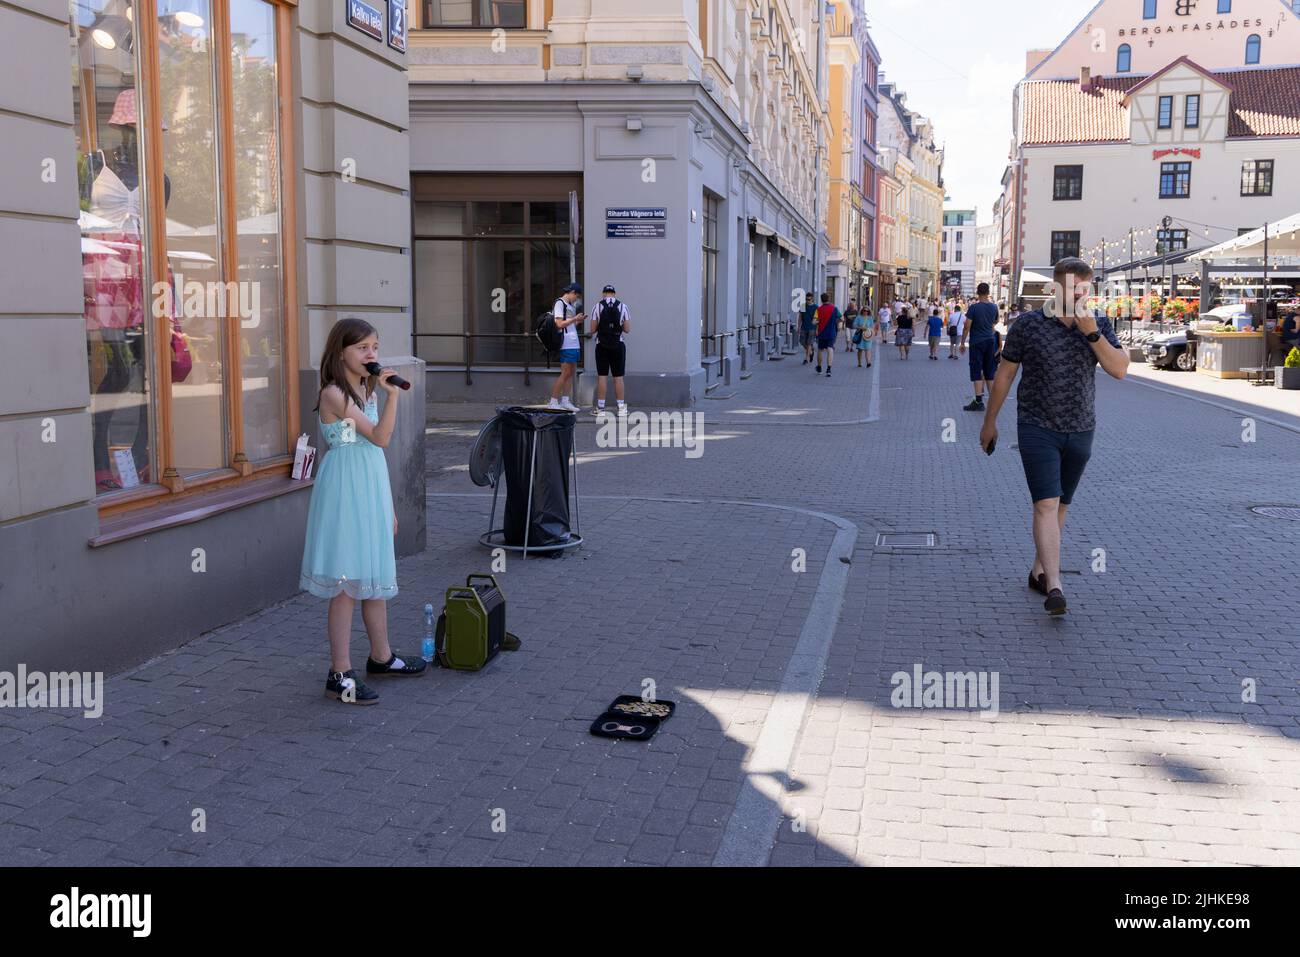 Enfants en train de jouer; Un enfant musicien de rue Riga; une jeune fille âgée de 10 ans chantant pour amasser de l'argent, vieille ville de Riga, Riga Lettonie Europe Banque D'Images